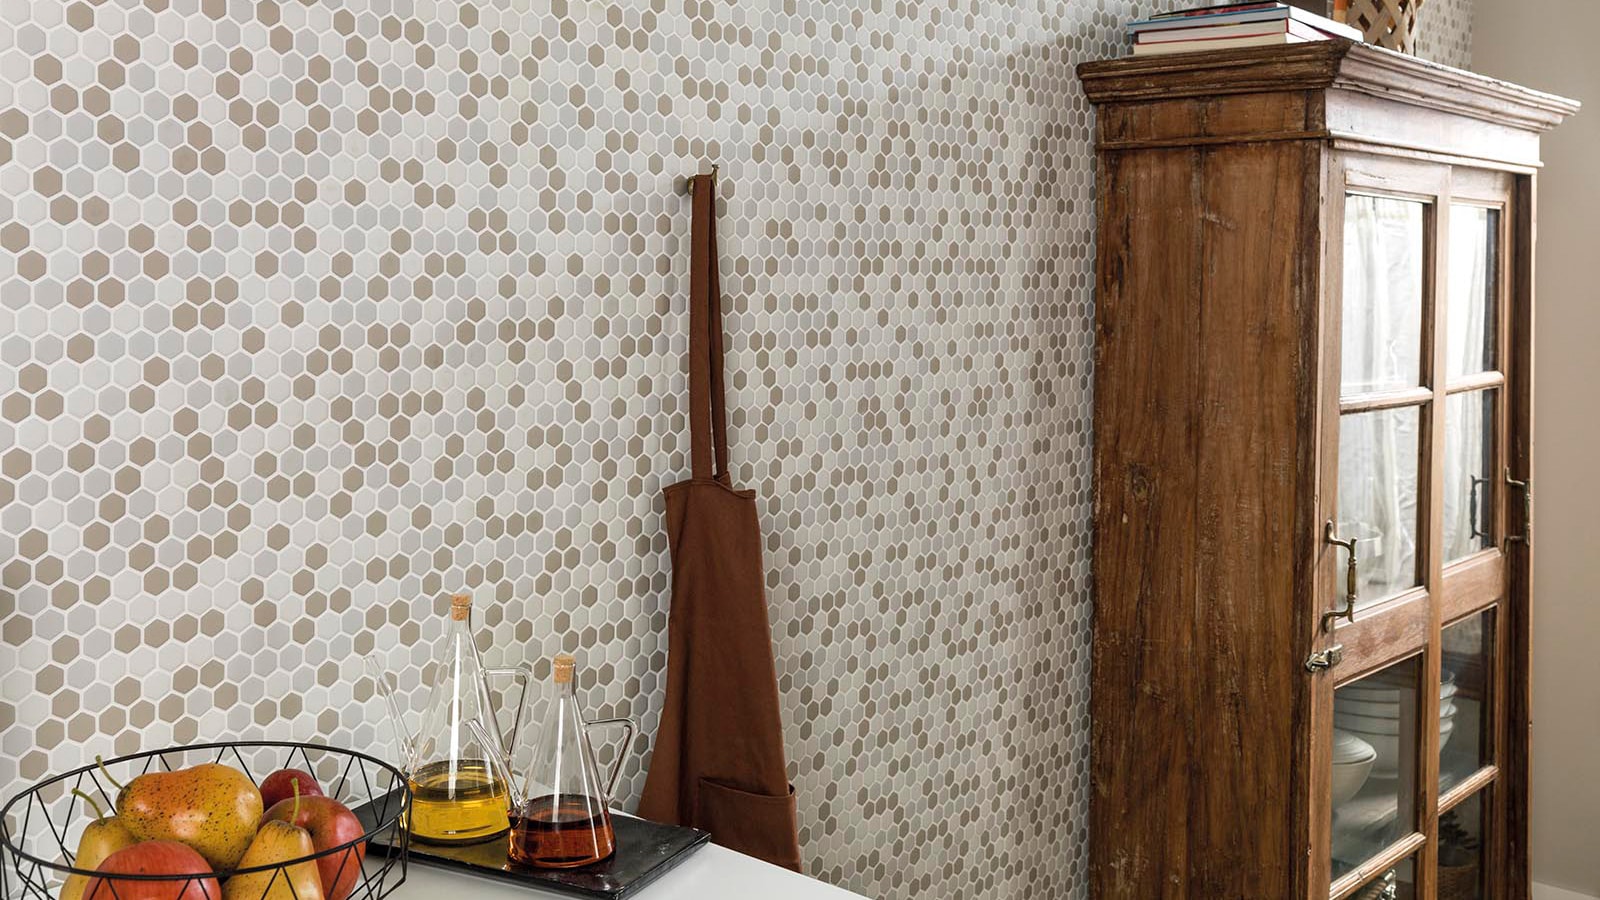 Carreaux hexagonaux : originalité et dynamisme dans la salle de bains et la cuisine